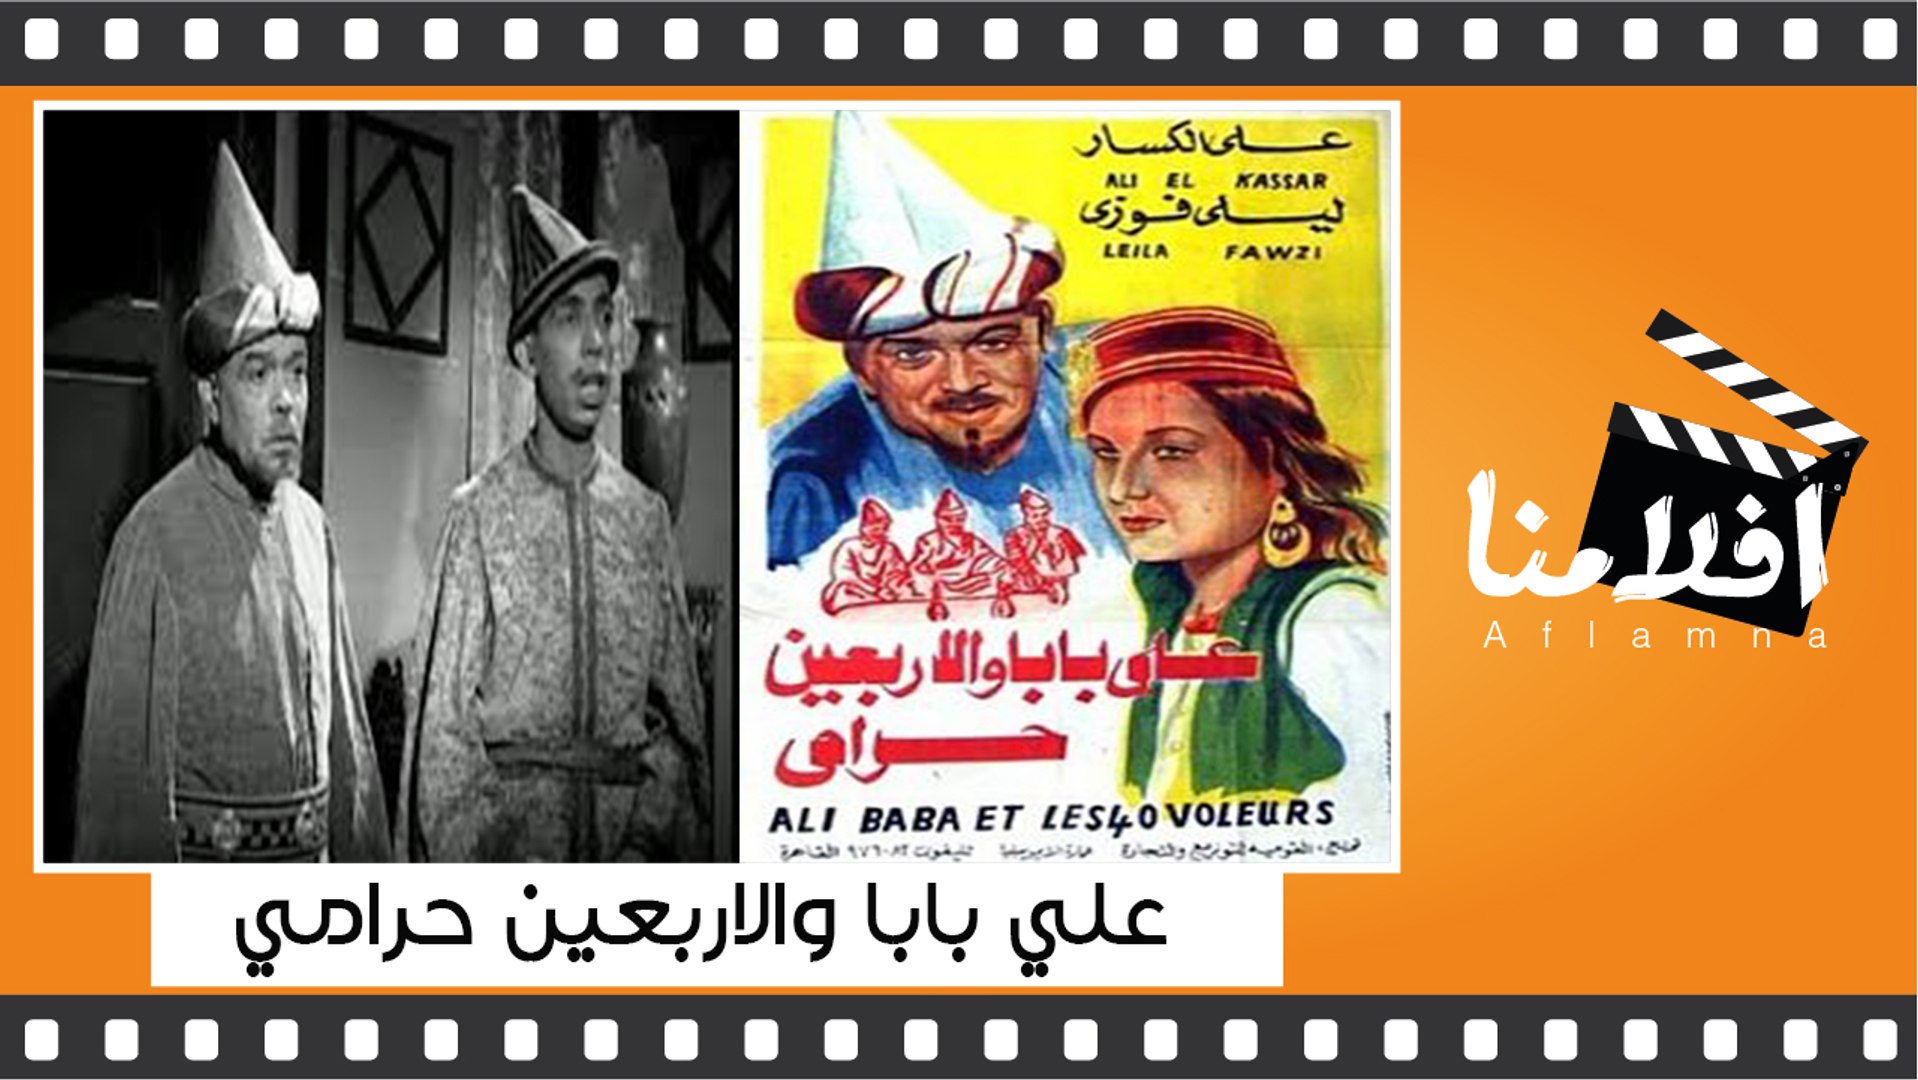 الفيلم العربي - على بابا والاربعين حرامى - بطولة - اسماعيل ياسين على الكسار  - فيديو Dailymotion